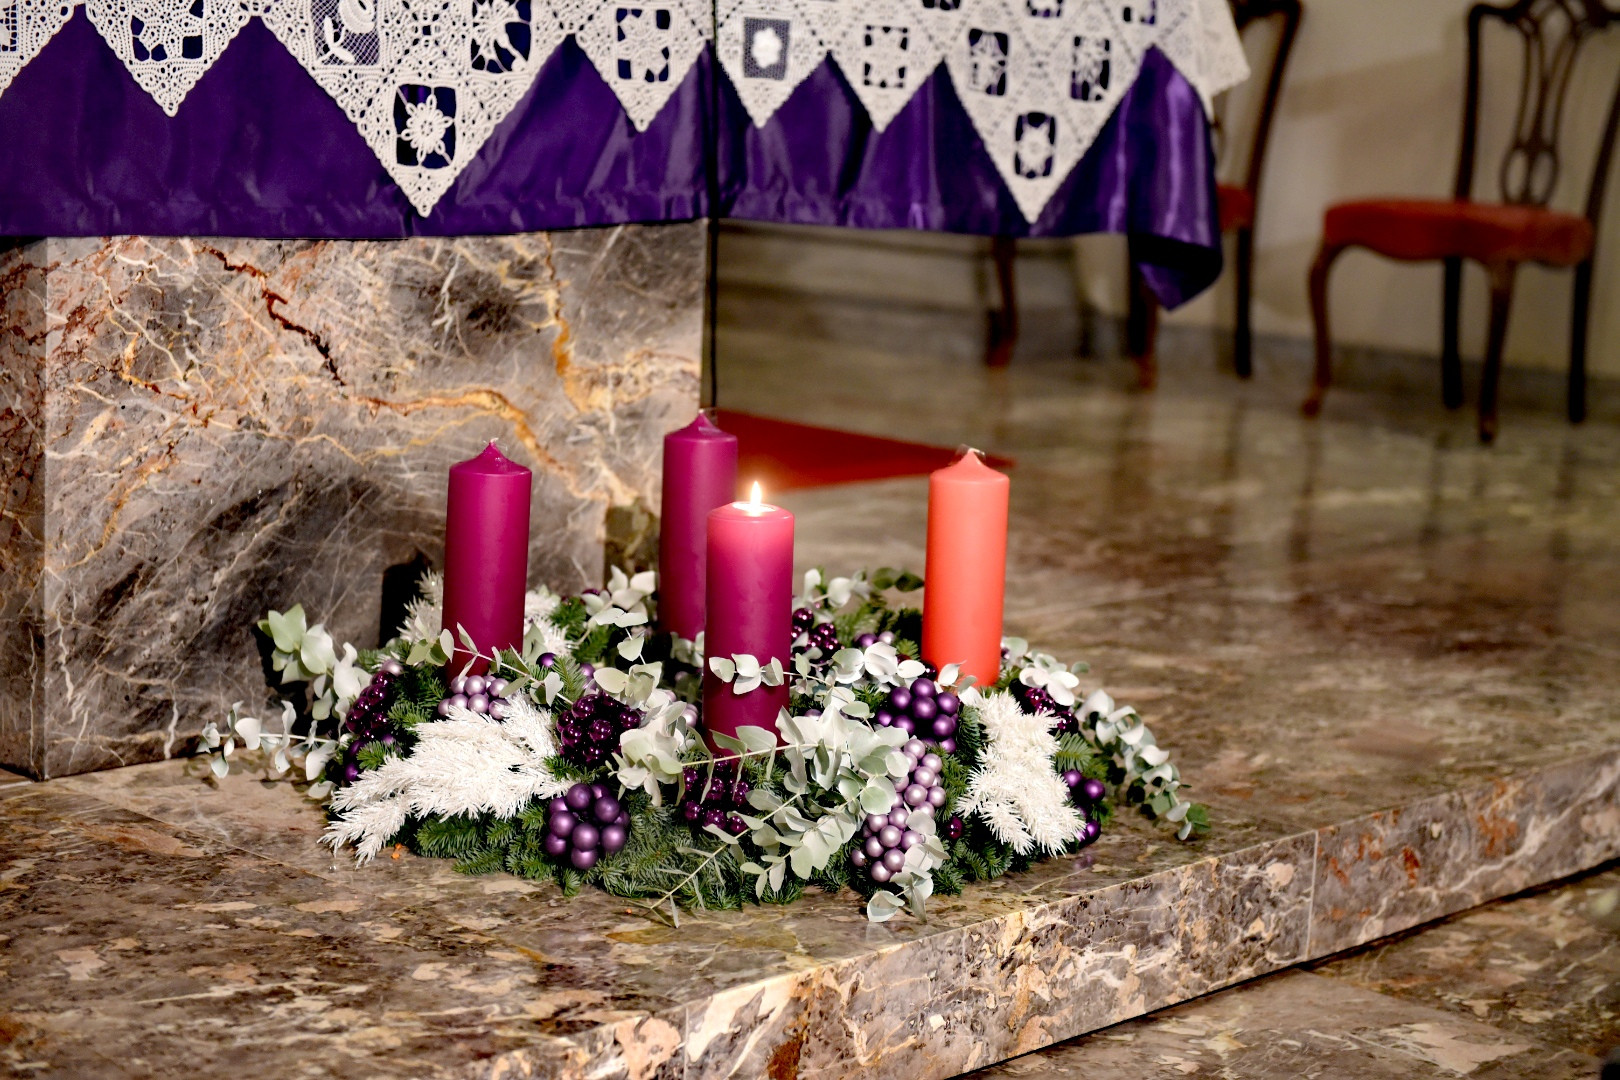 Na 1. adventno nedeljo smo prižgali prvo svečko in blagoslovili adventne vence